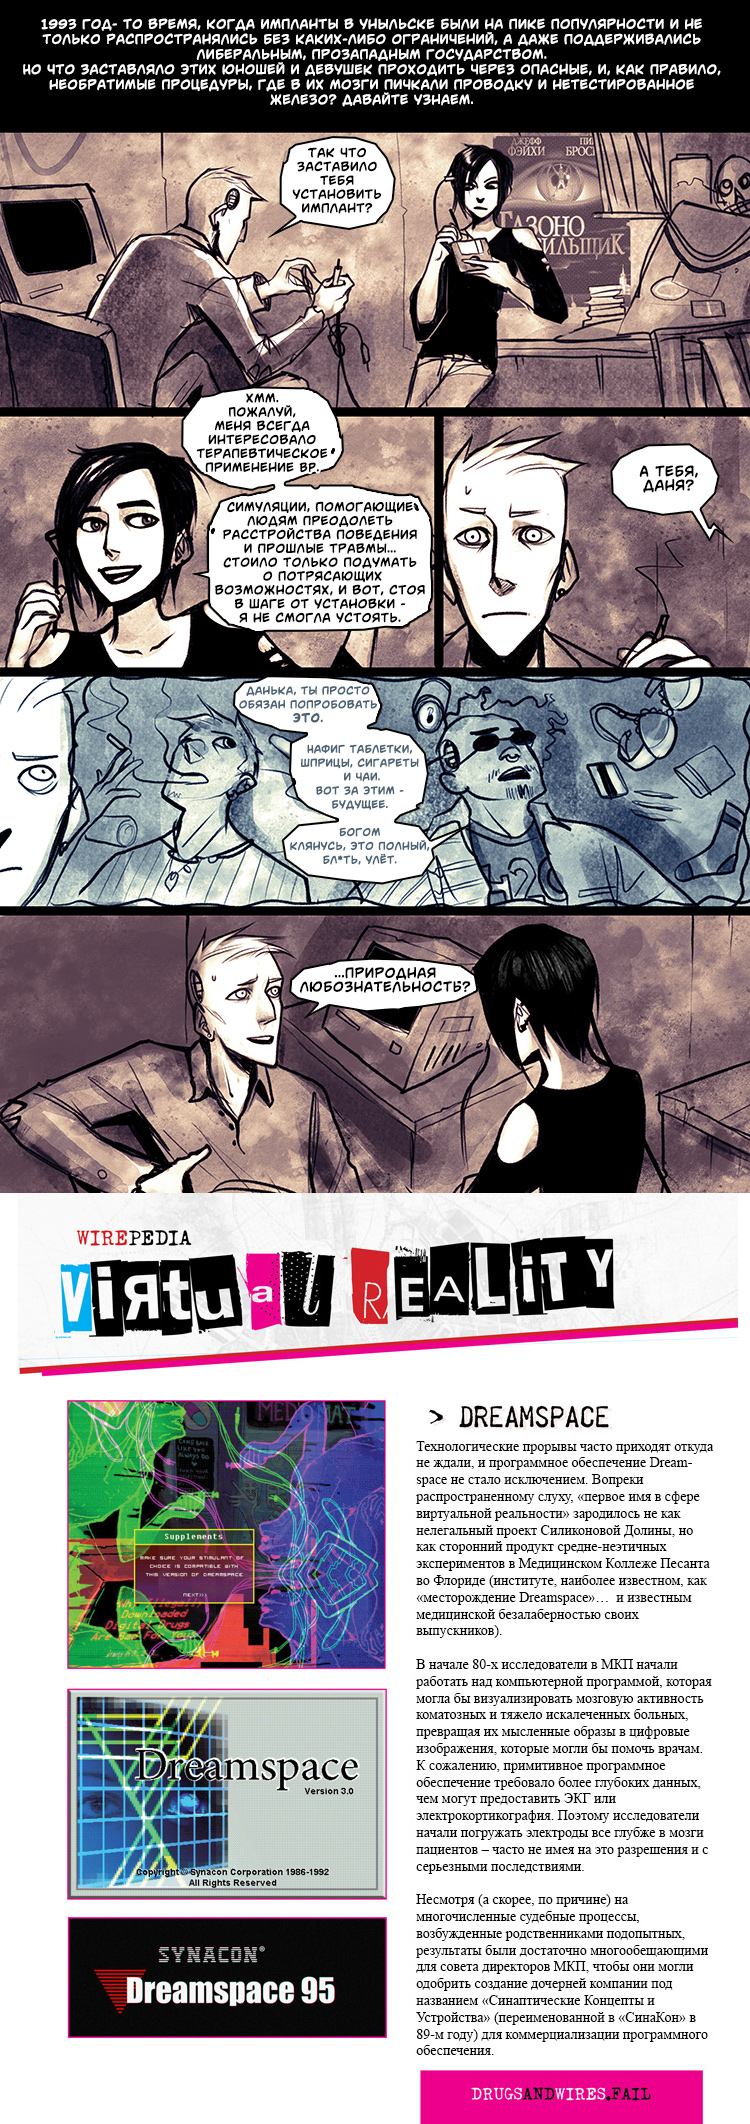 Экстра: Виртуальная Реальность "Dreamspace"